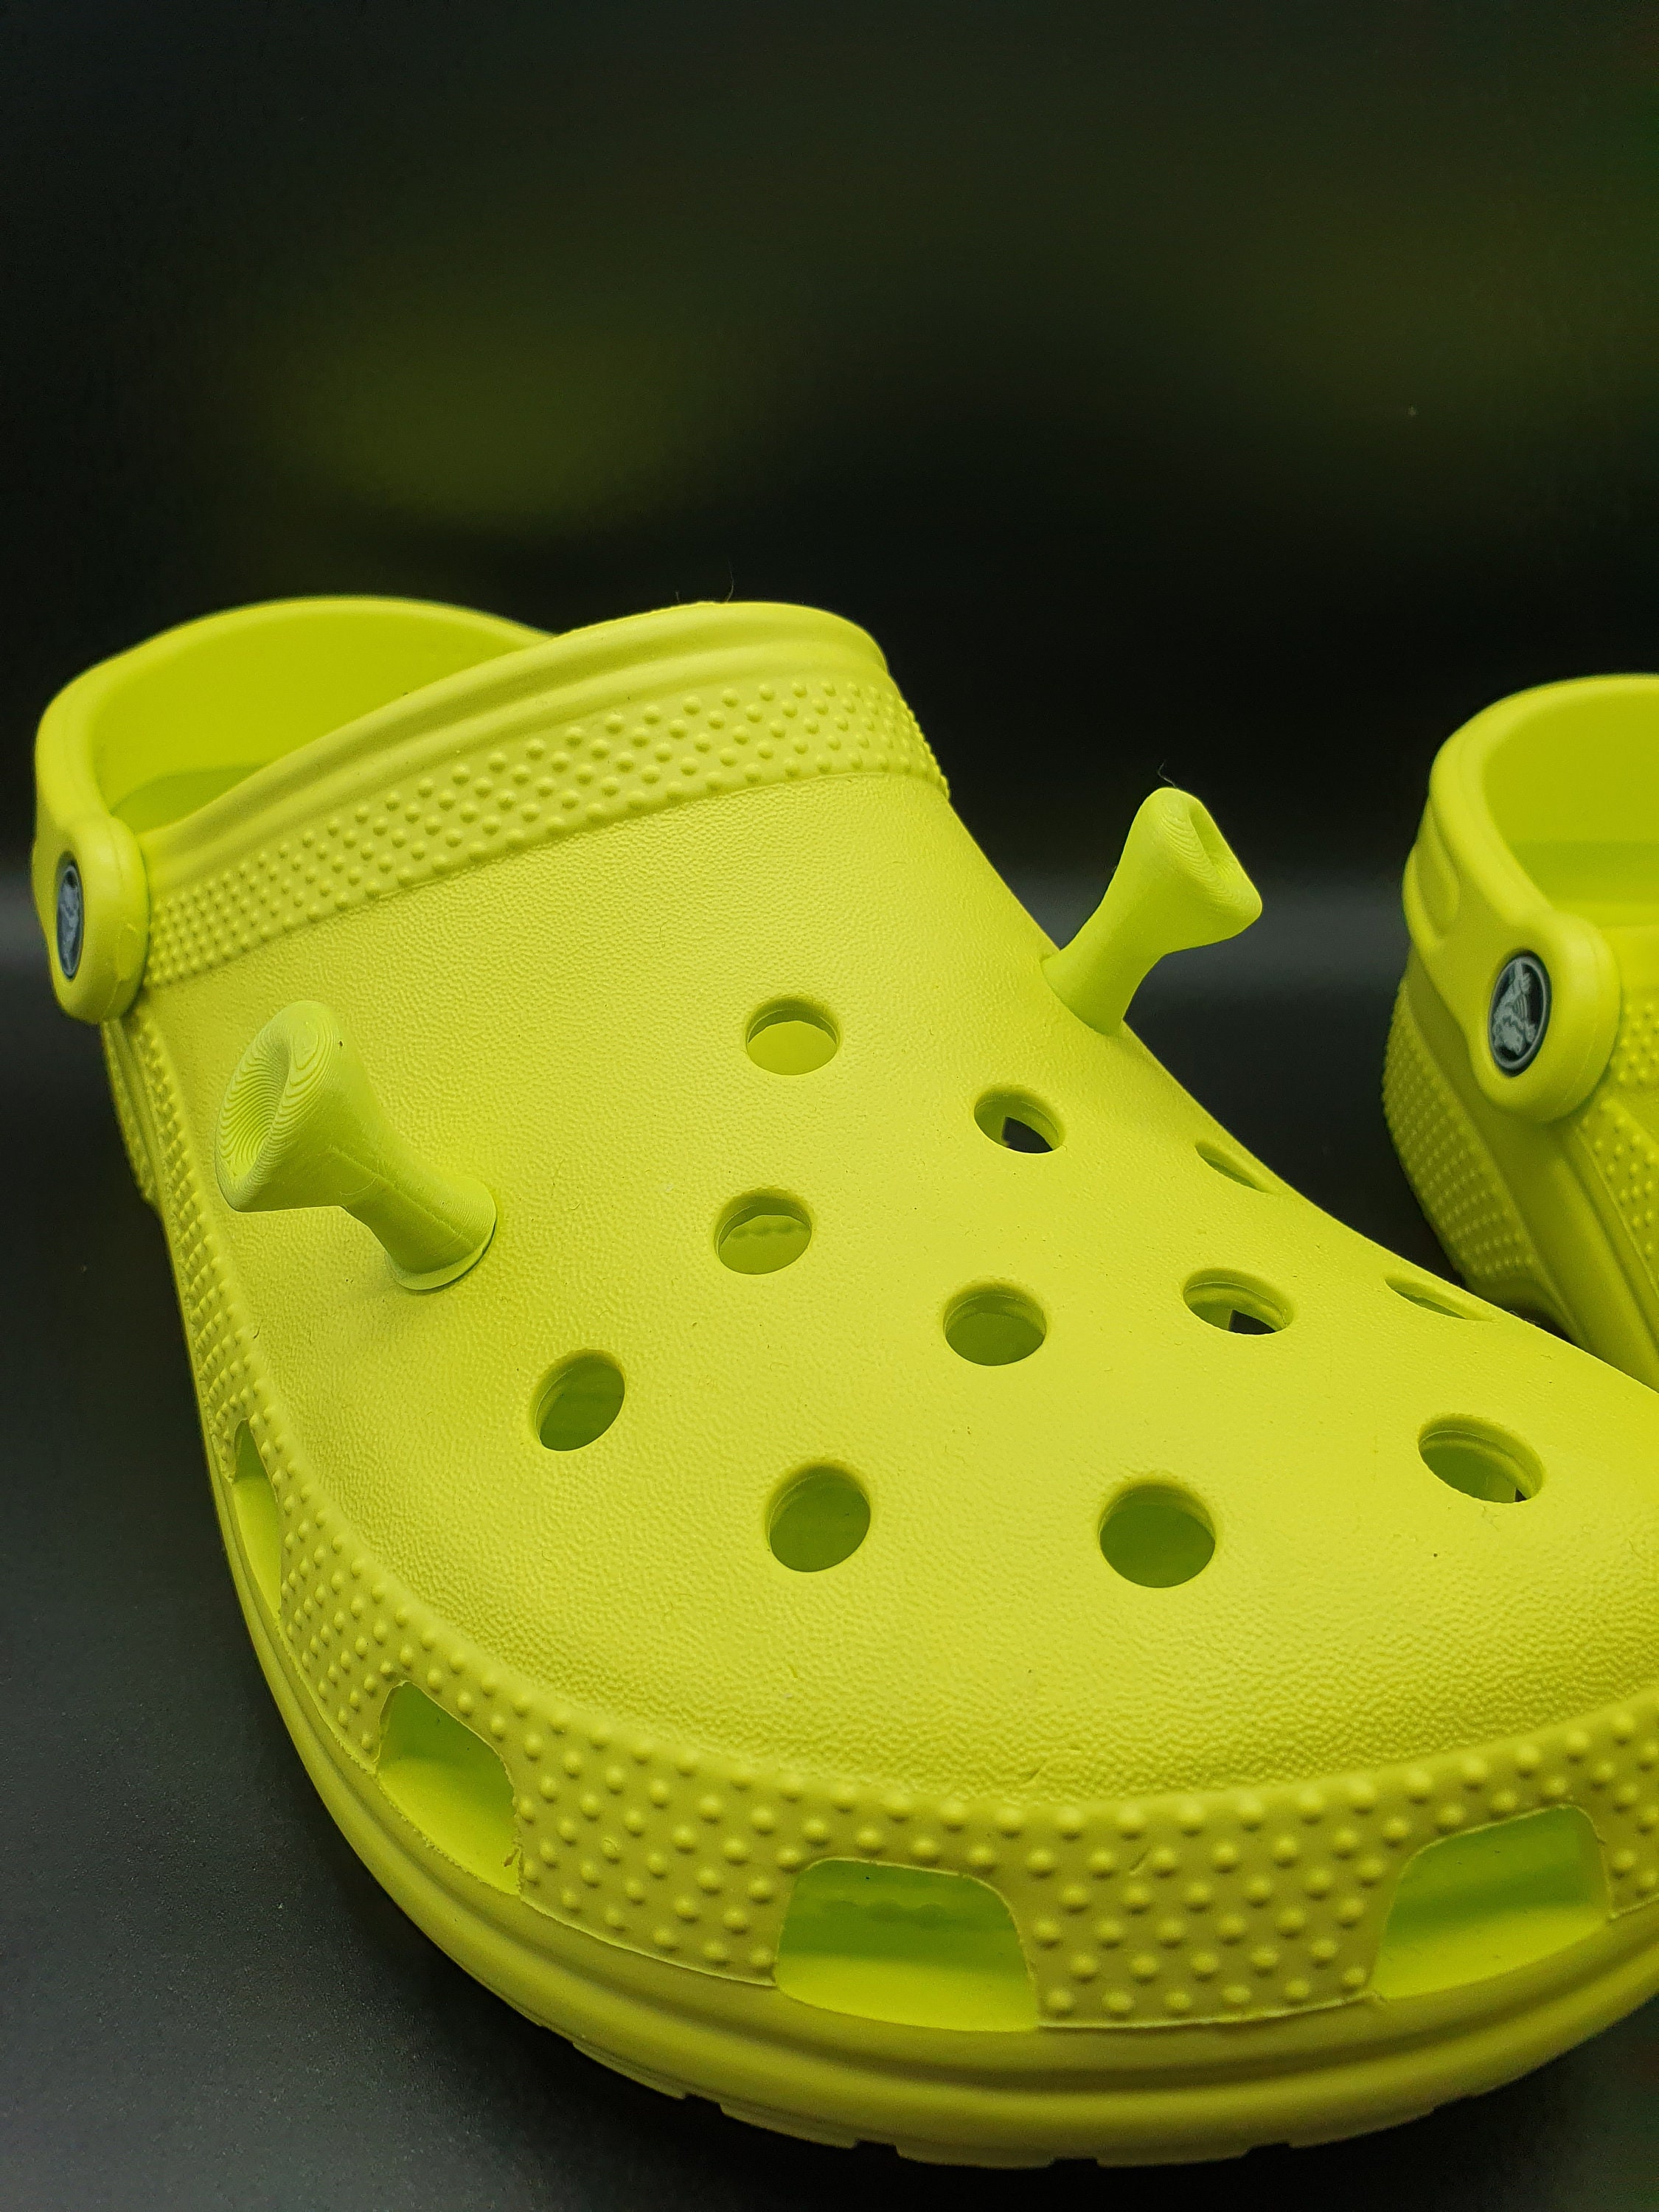 Buy Shrek Ears Crocs Charms Online in India 